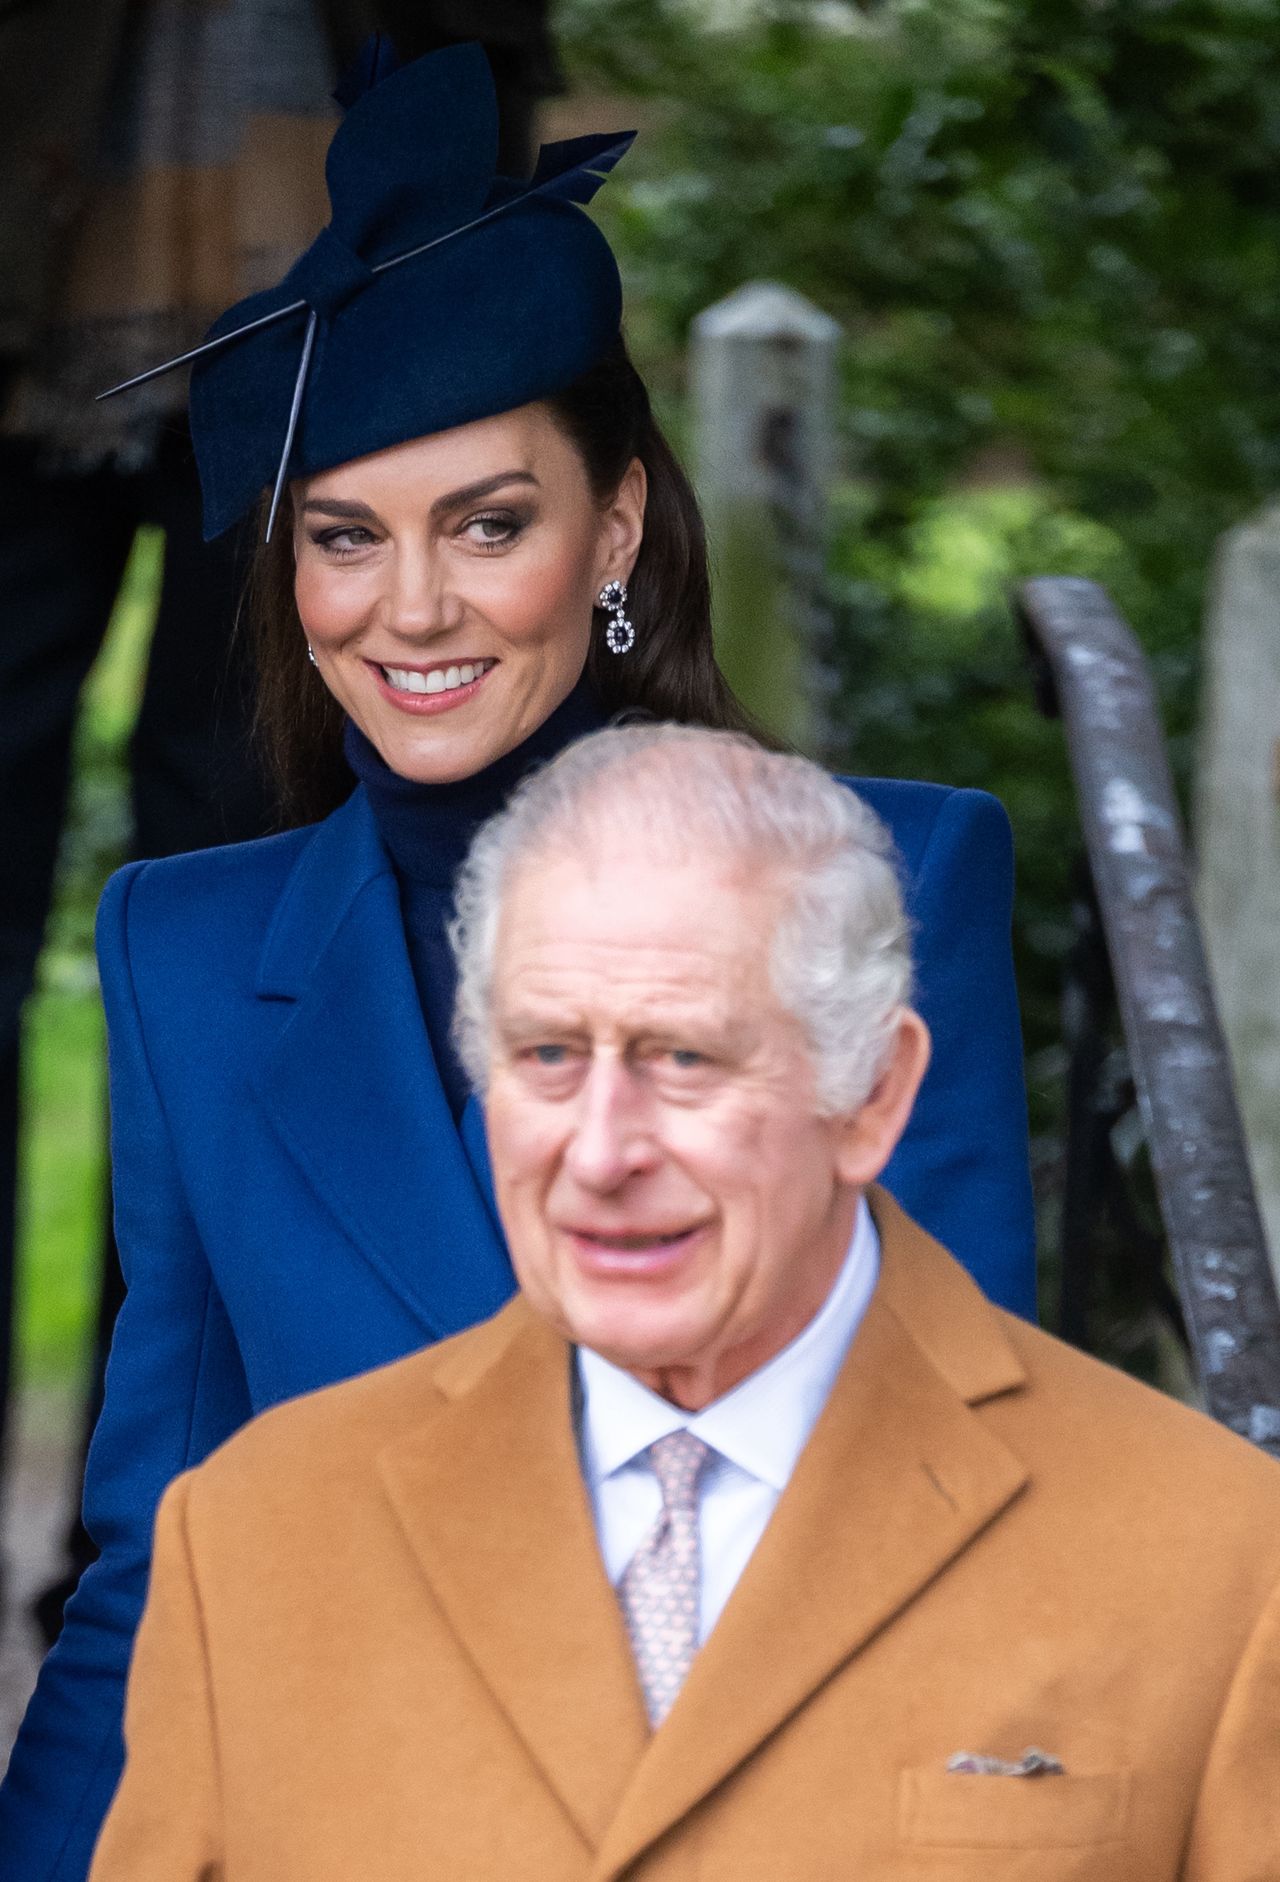 Król Karol III darzy Kate dużą sympatią (fot. Getty Images)